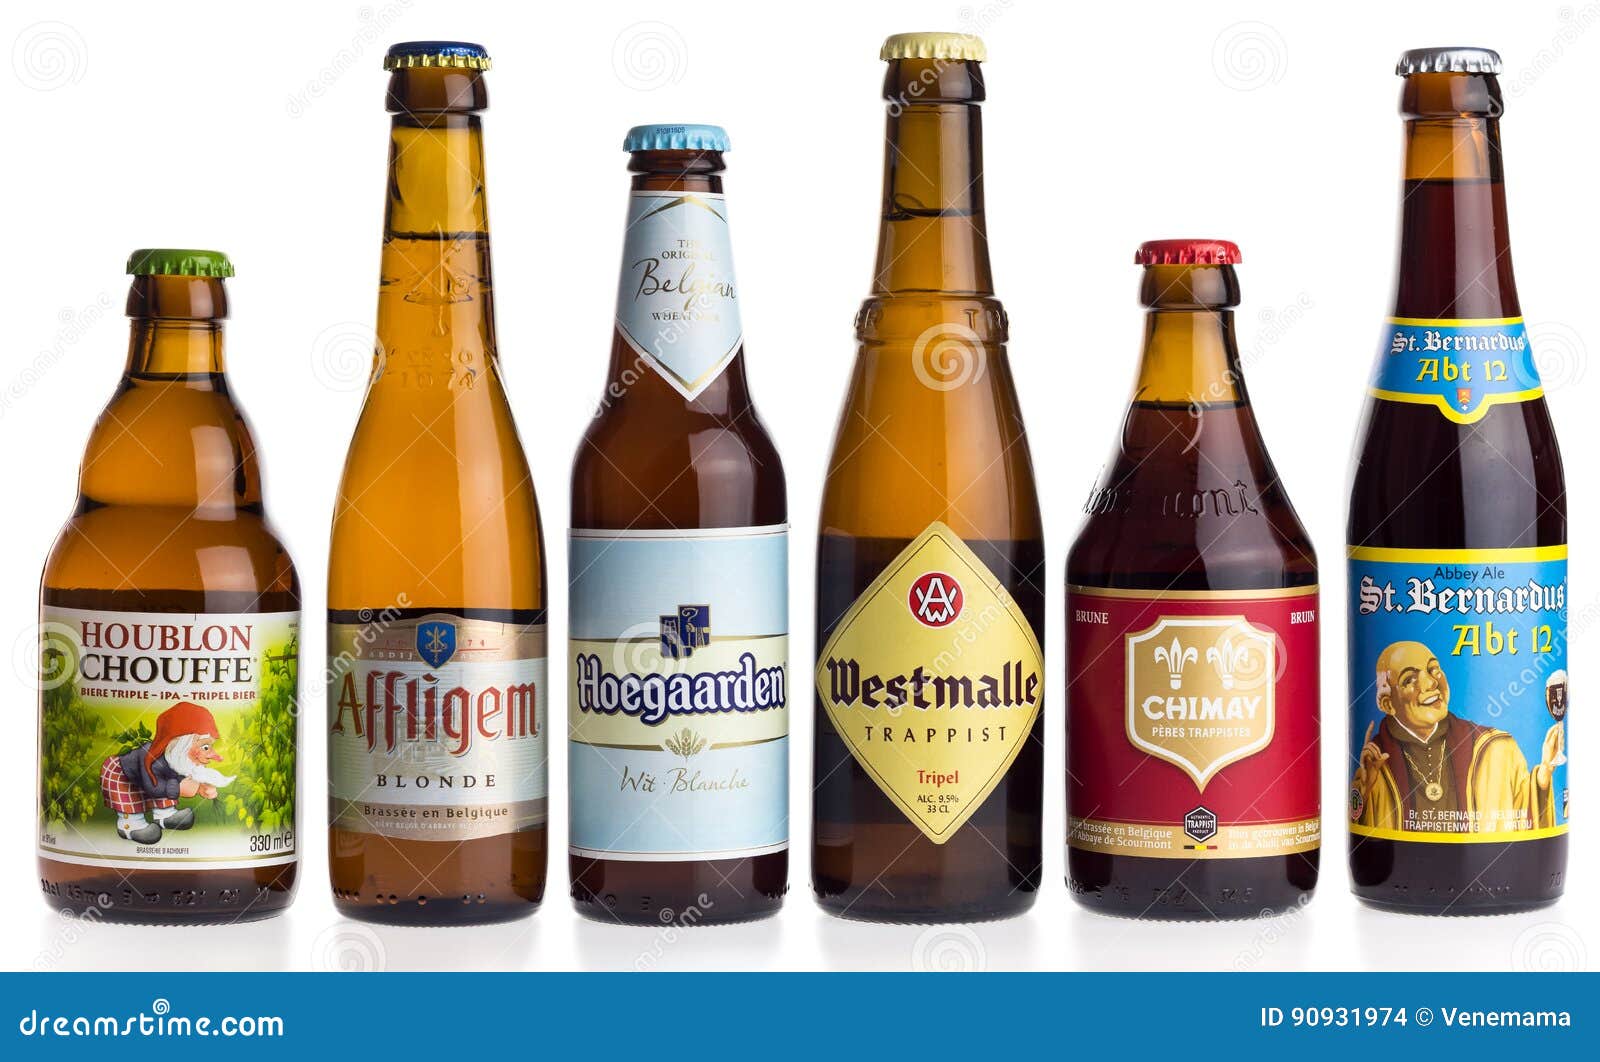 geweer Welkom Gesprekelijk Inzameling Van Belgische Bieren Op Wit Redactionele Stock Afbeelding -  Image of belgië, brouwerij: 90931974